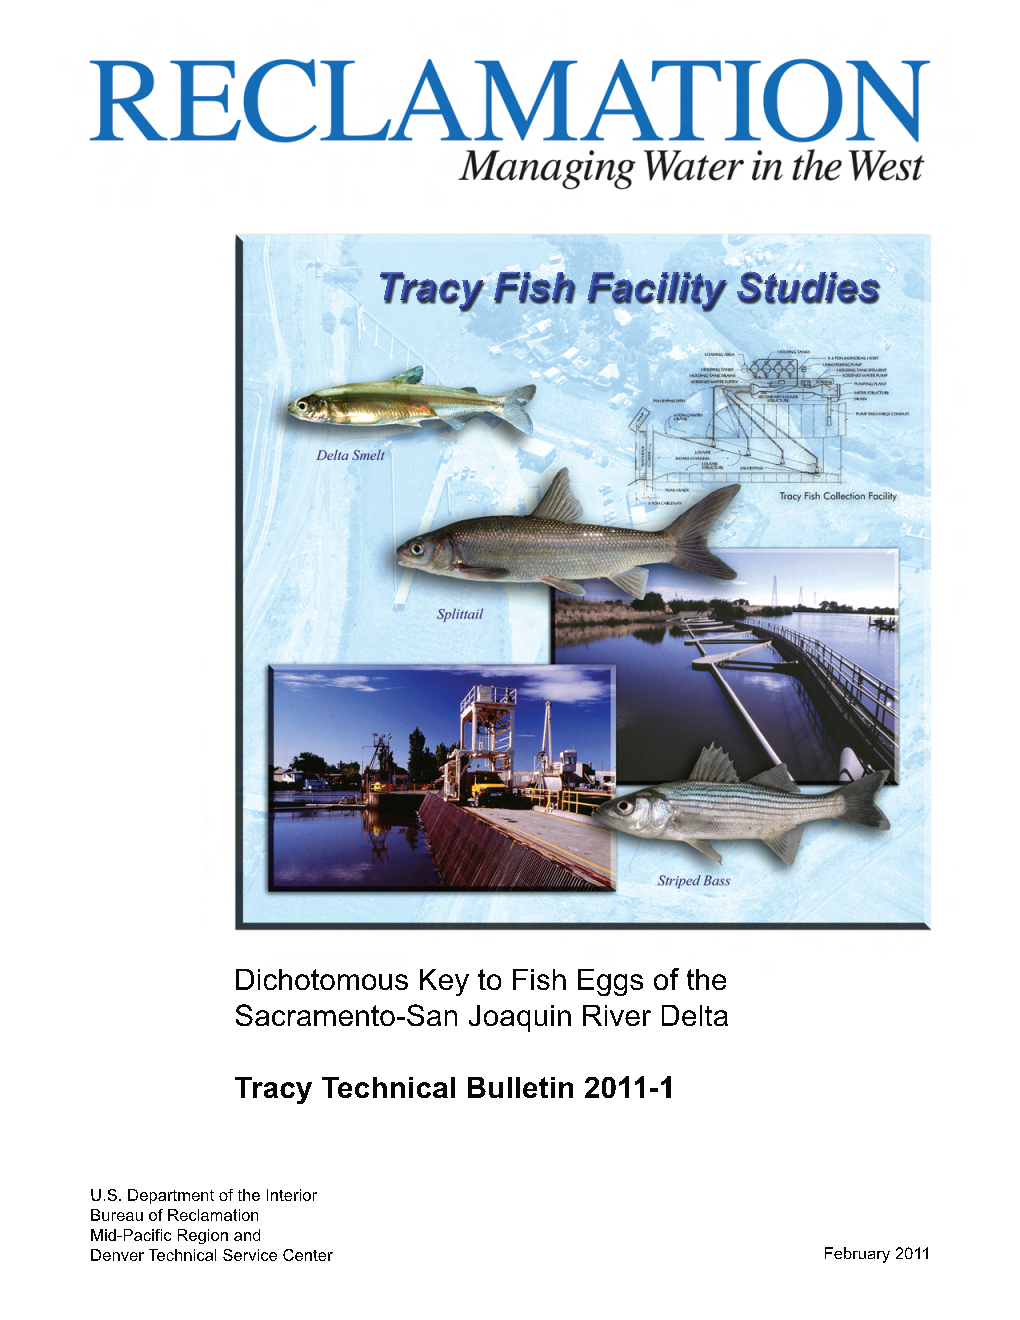 Tracy Technical Bulletin 2011-1